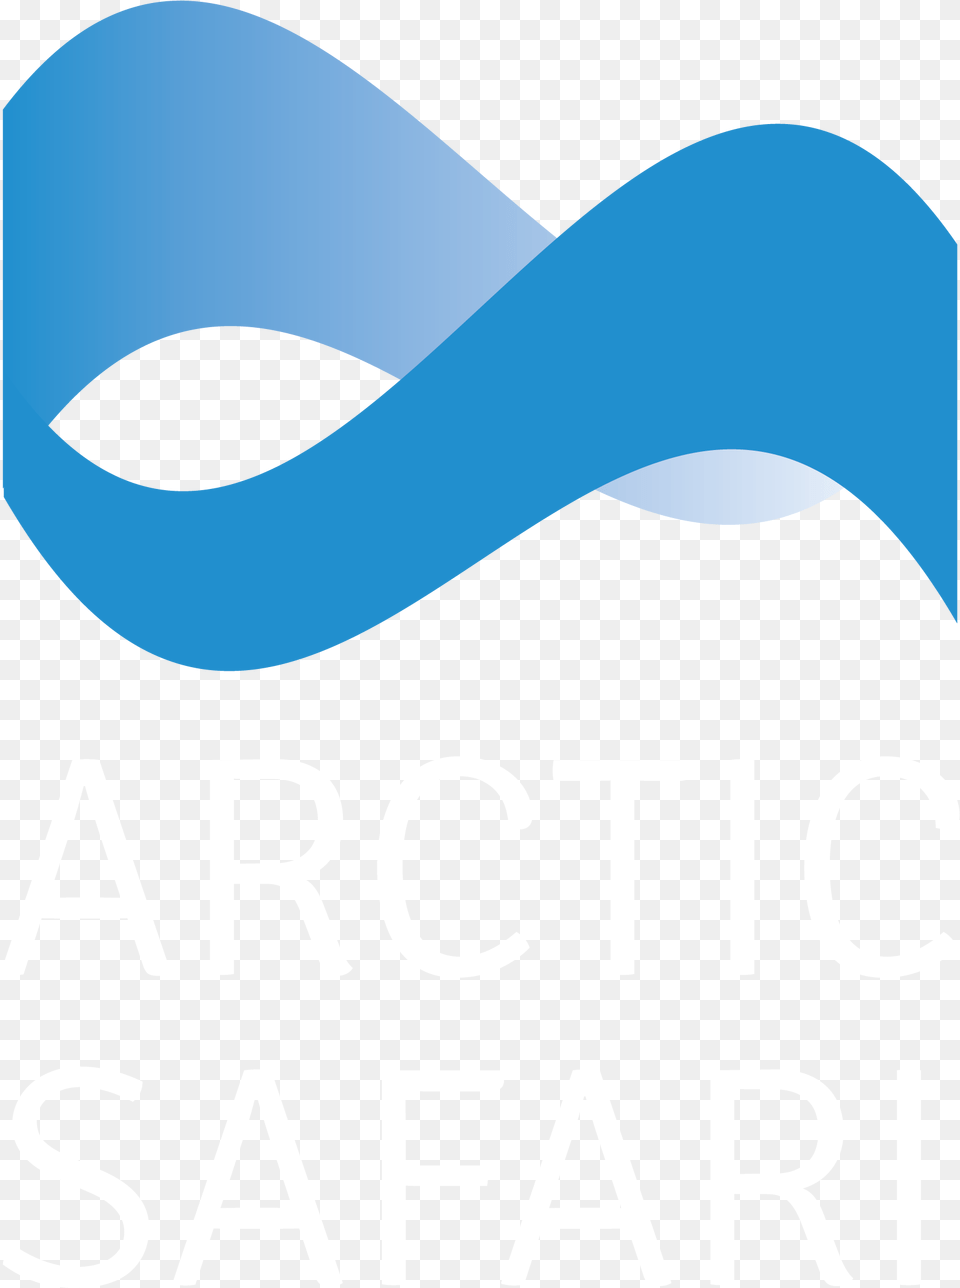 Arctic Safari Logo, Advertisement, Poster, Text Free Transparent Png